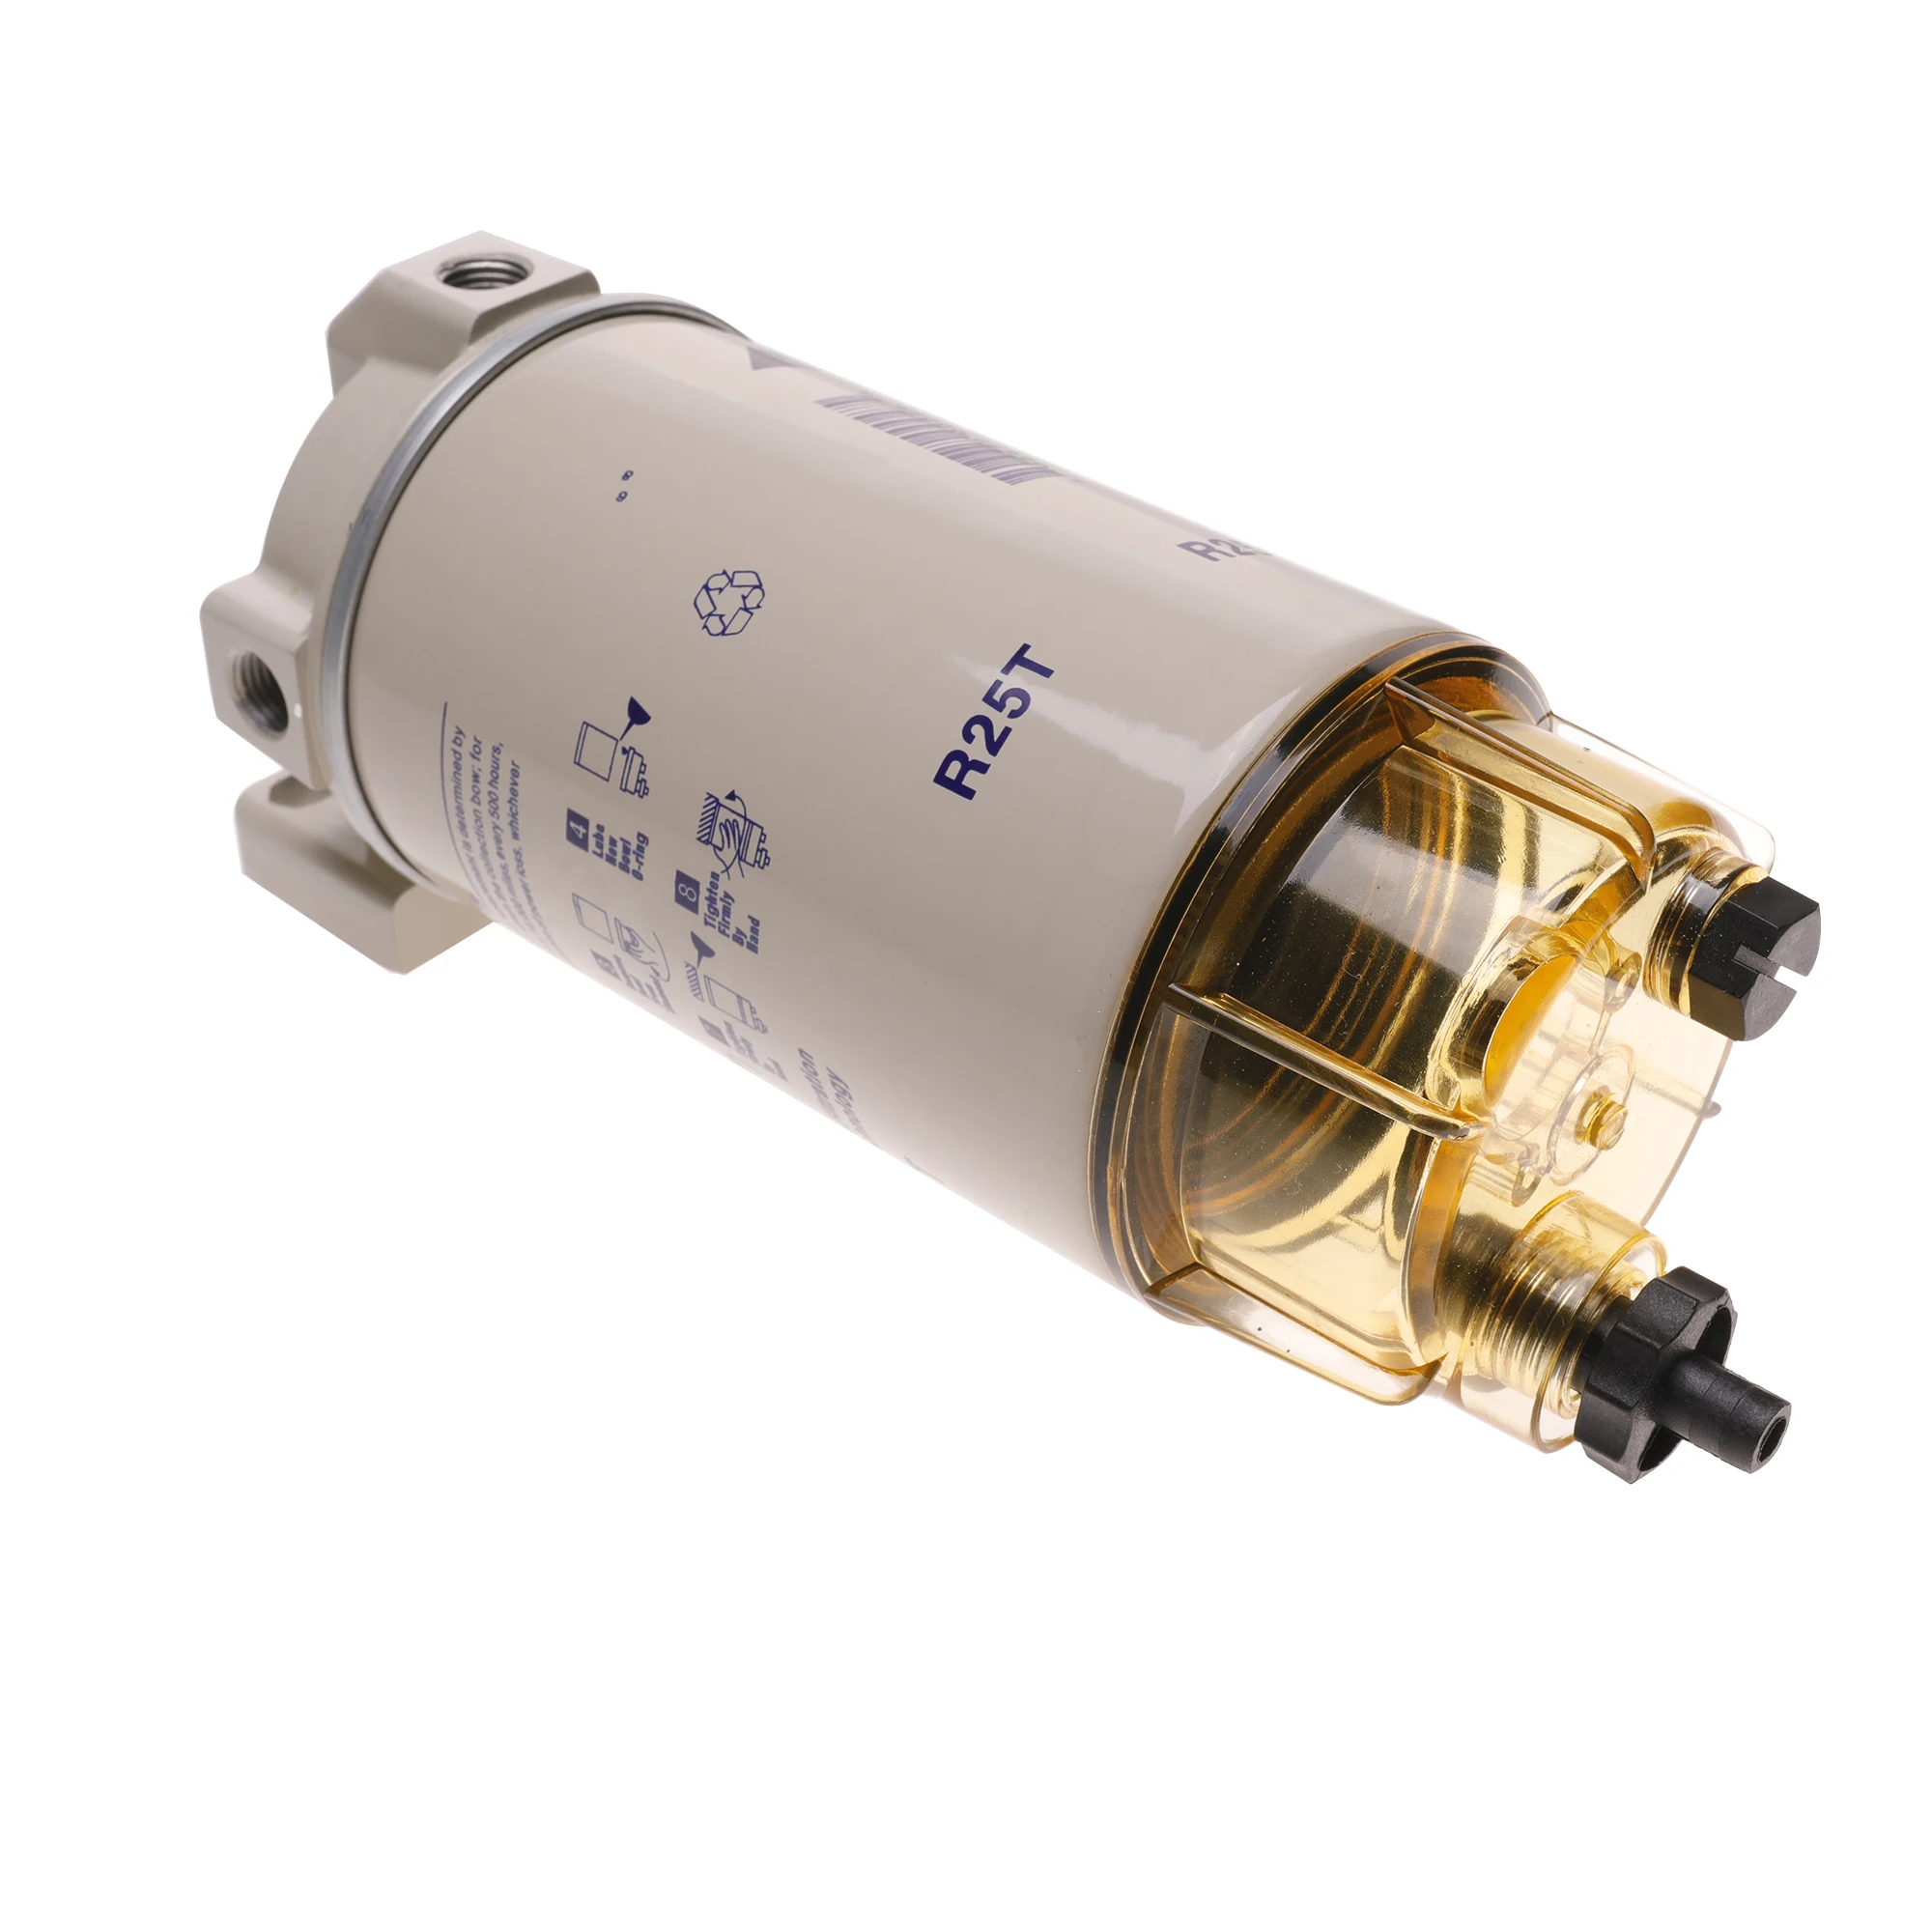 R25T Spin-on топливный фильтр/водный морской сепаратор заменяет Racor 320R-Rac-01